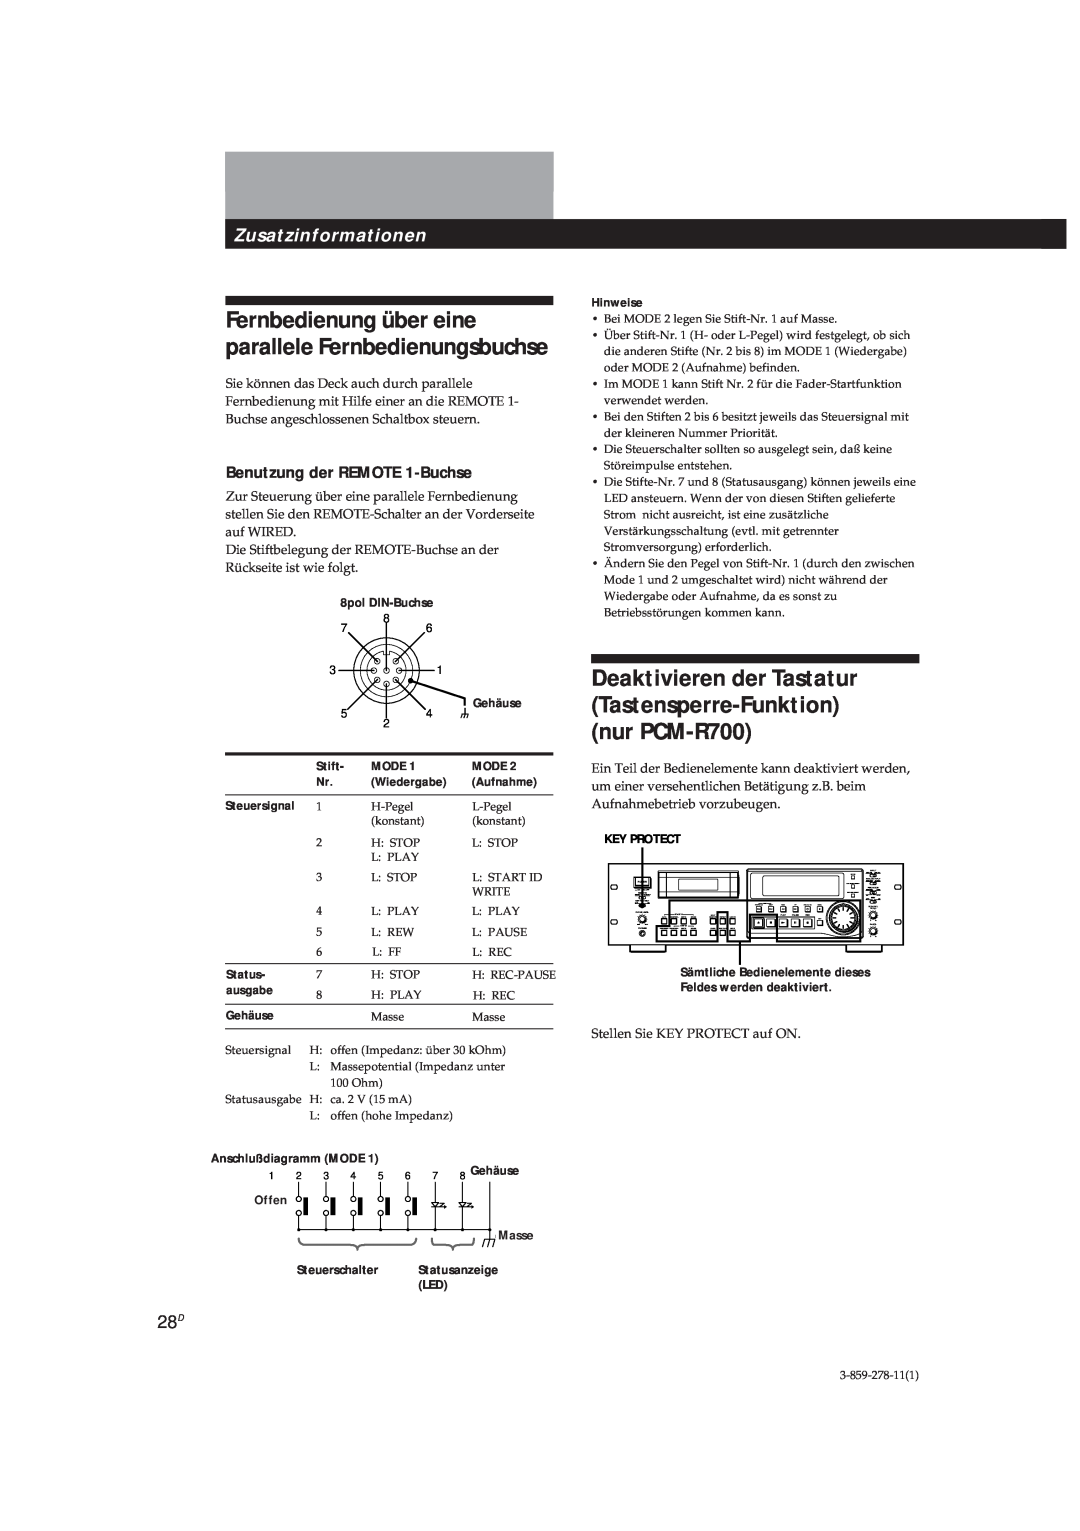 Sony PCM-R500 Zusatzinformationen, Benutzung der REMOTE 1-Buchse, Stift, Mode, Wiedergabe, Aufnahme, Steuersignal, Status 